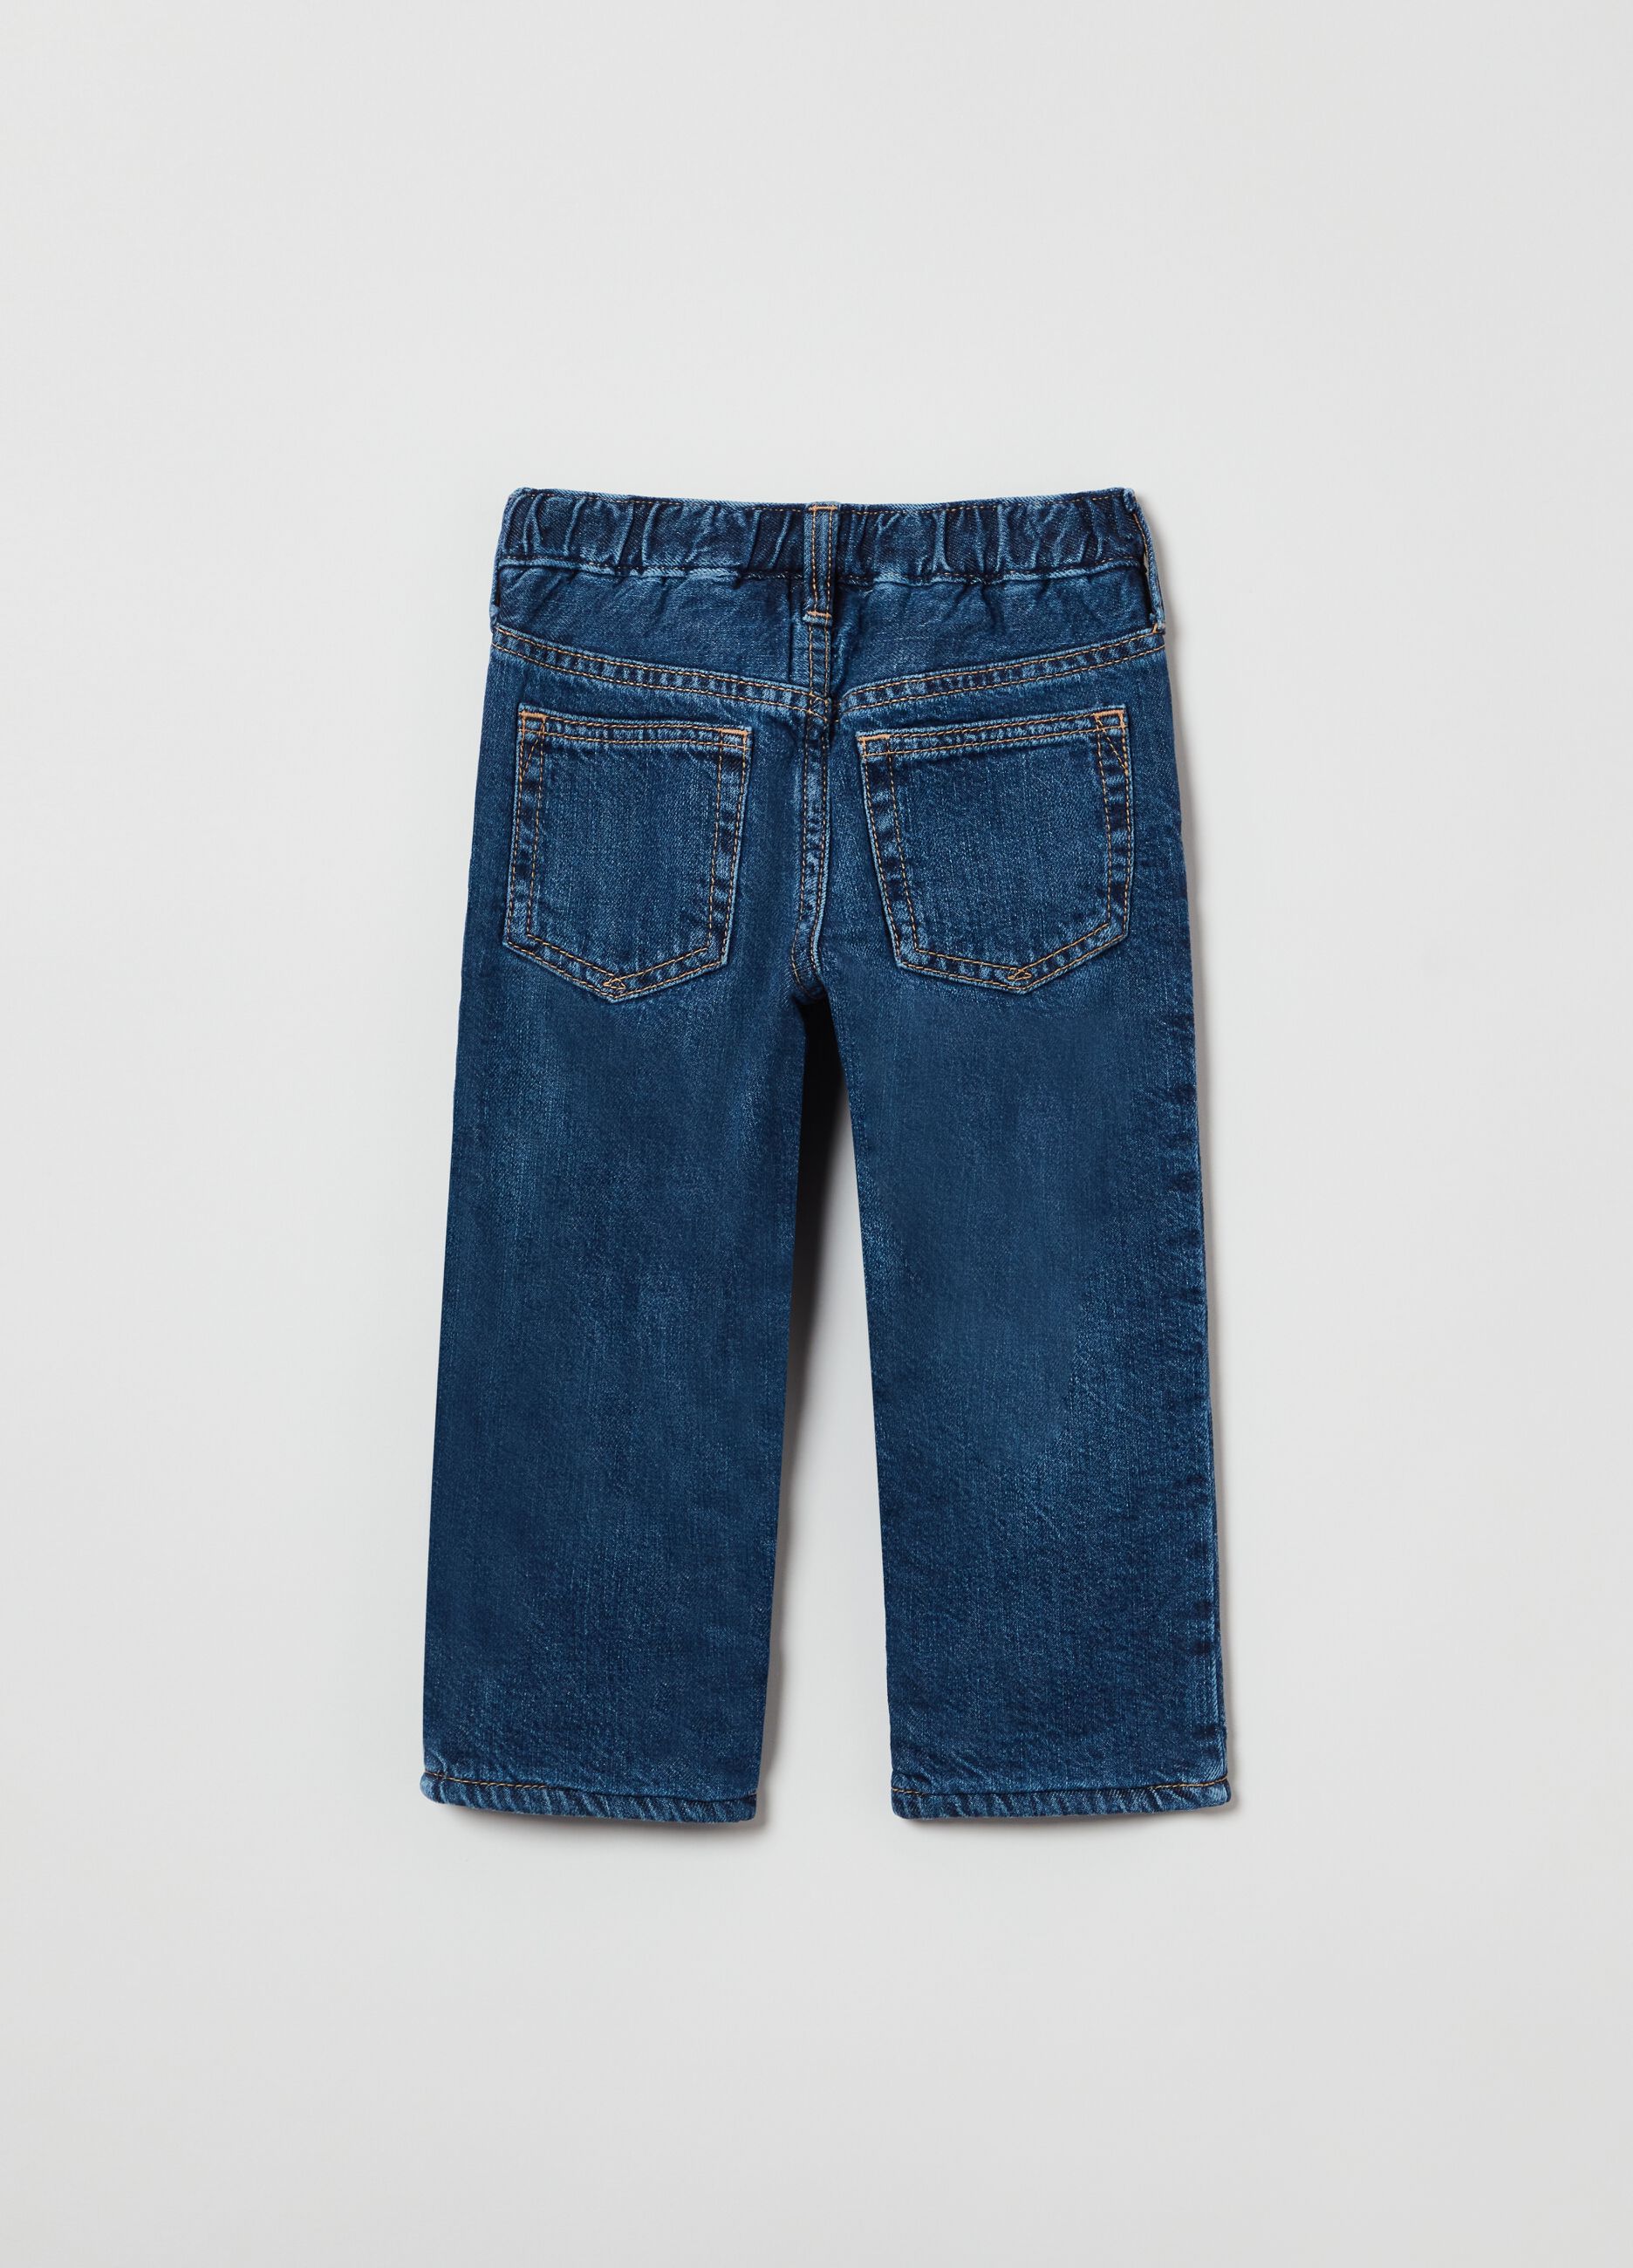 Five-pocket jeans.